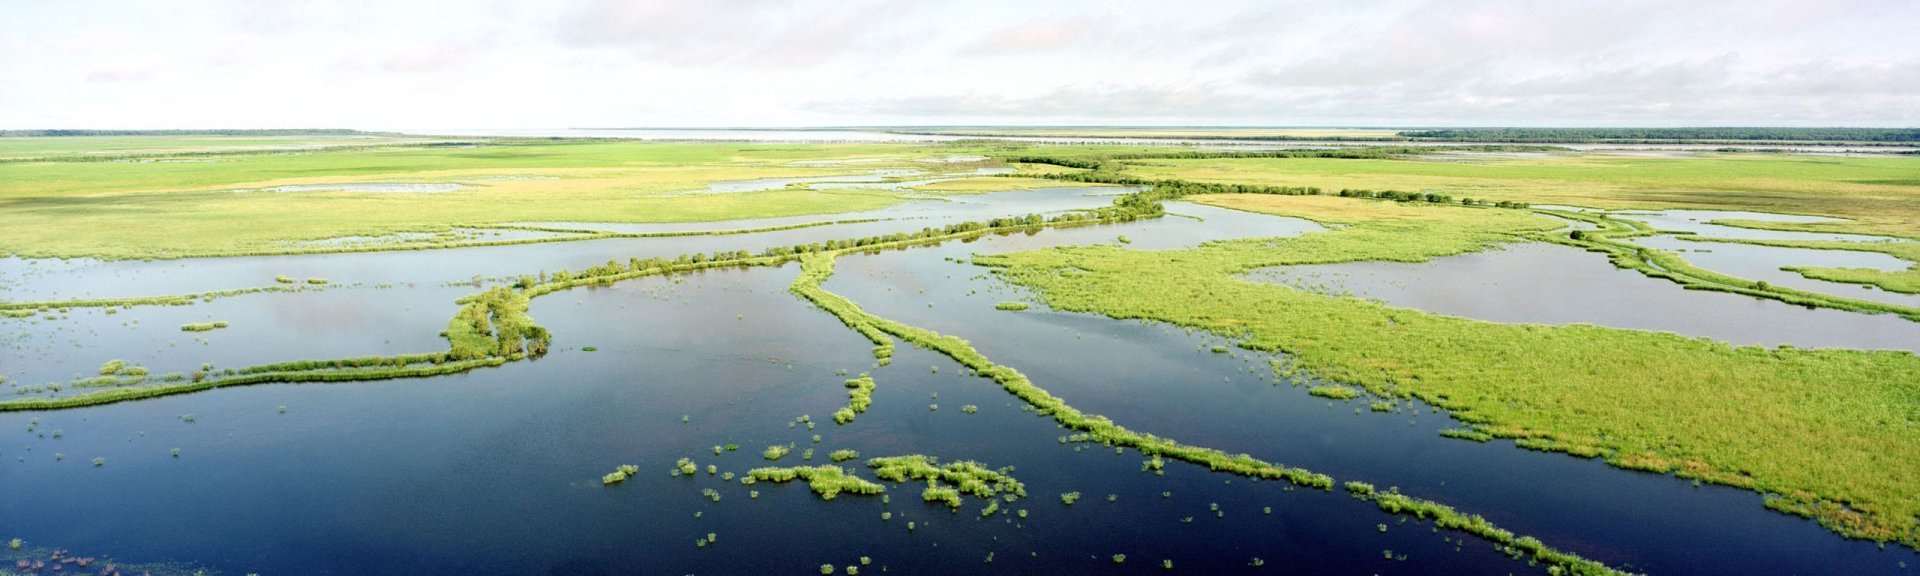 Kakadu flood plains. Photo: Ian Oswald-Jacobs